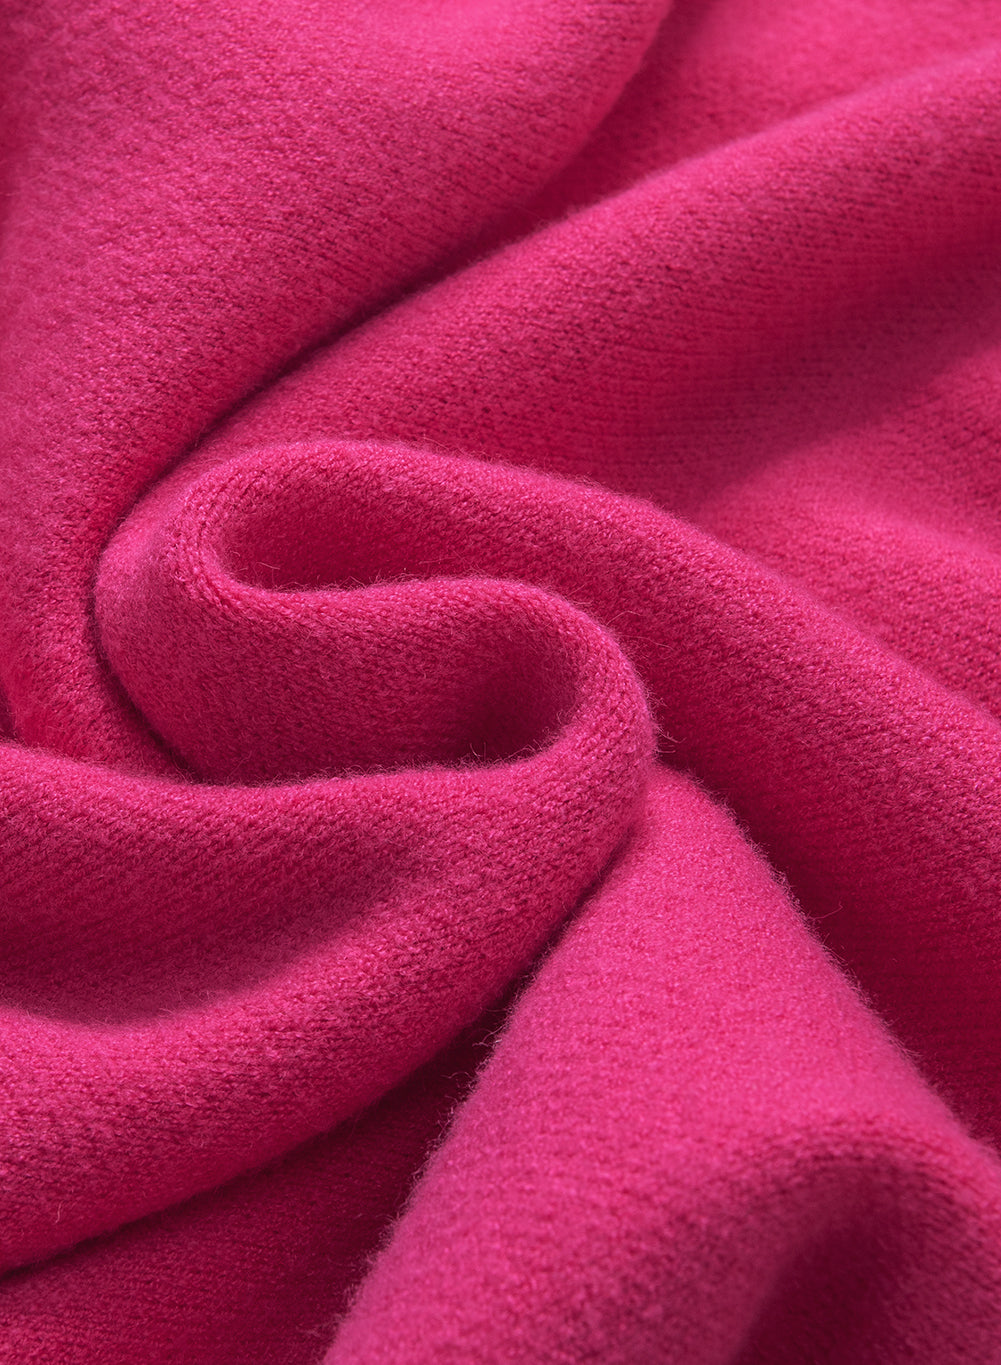 Pulover z v-izrezom, okrašen z rožnato rdečimi biseri in mehkimi srčki